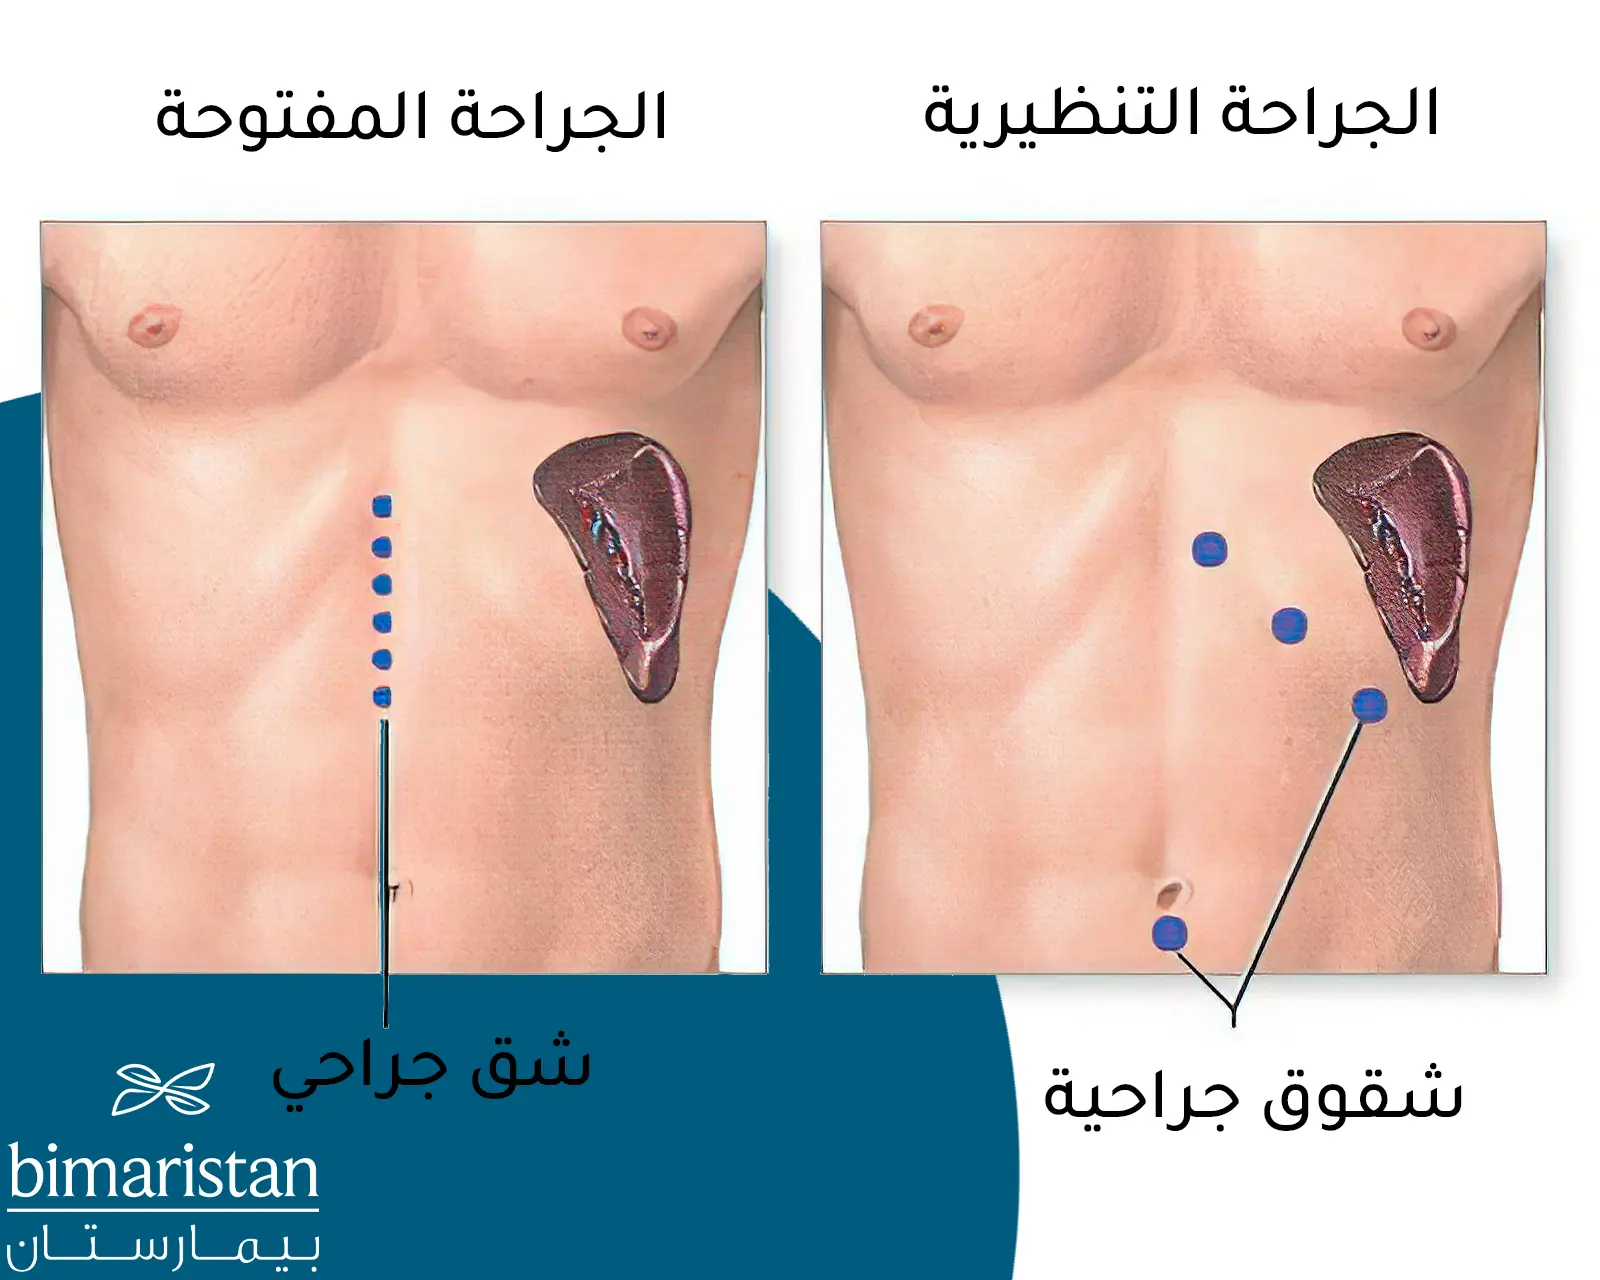 Splenektomide açık cerrahi ile laparoskopik cerrahi arasındaki farkı gösteren açıklayıcı bir görüntü